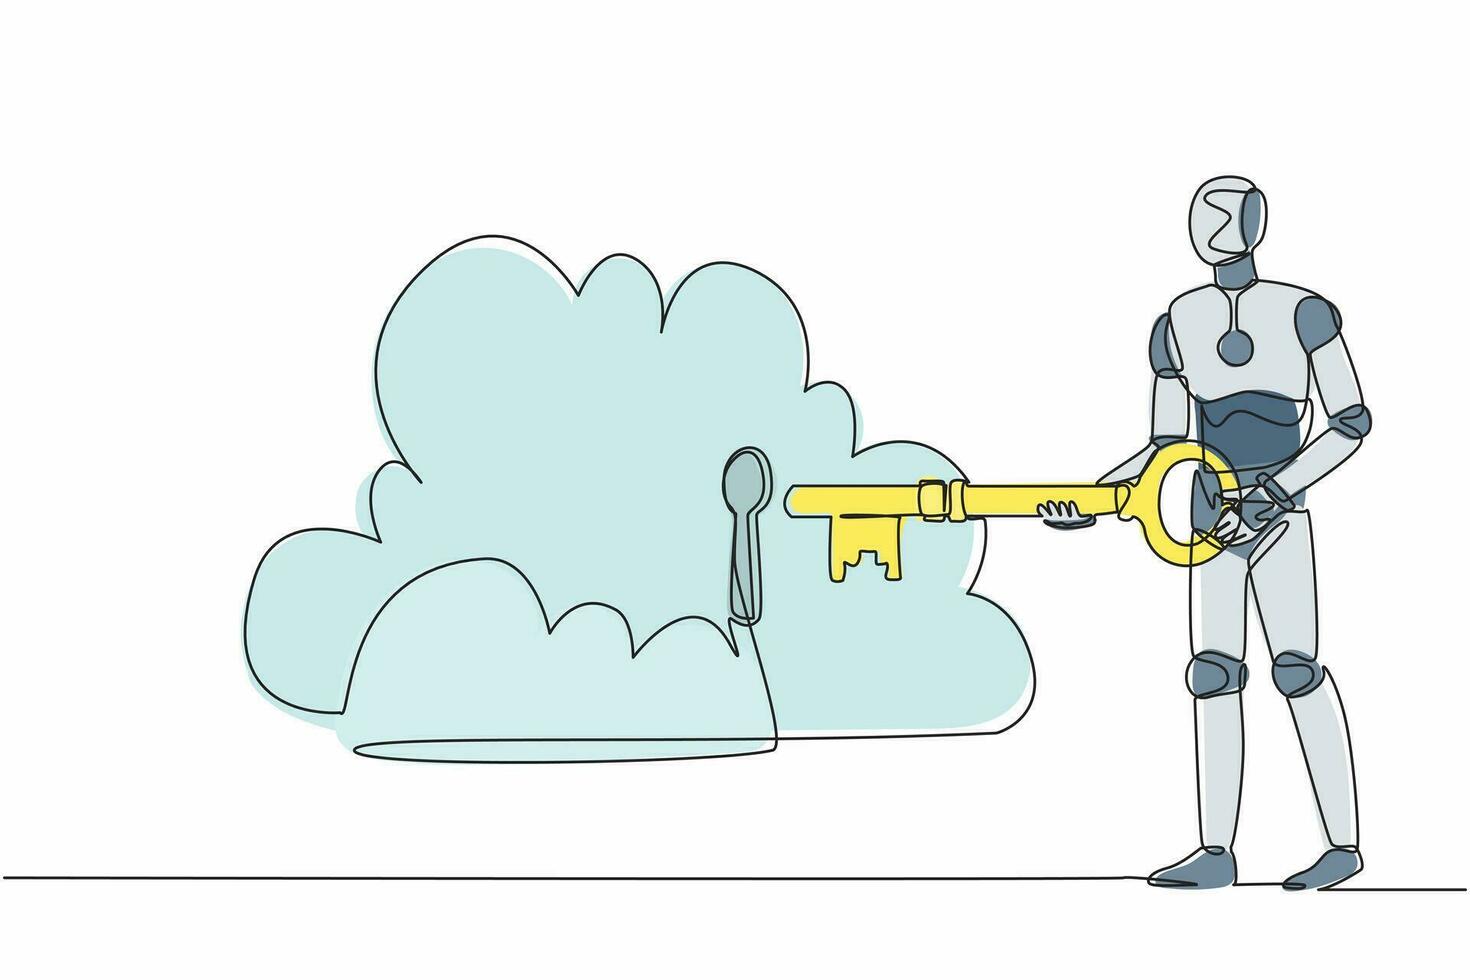 kontinuierlicher einzeiliger roboter, der einen großen schlüssel in die wolke legt. Sicherheitsspeicher, Passwortsperre Sicherheitsauthentifizierung. humanoider Roboter kybernetischer Organismus. Vektorgrafik-Illustration für einzeiliges Design vektor